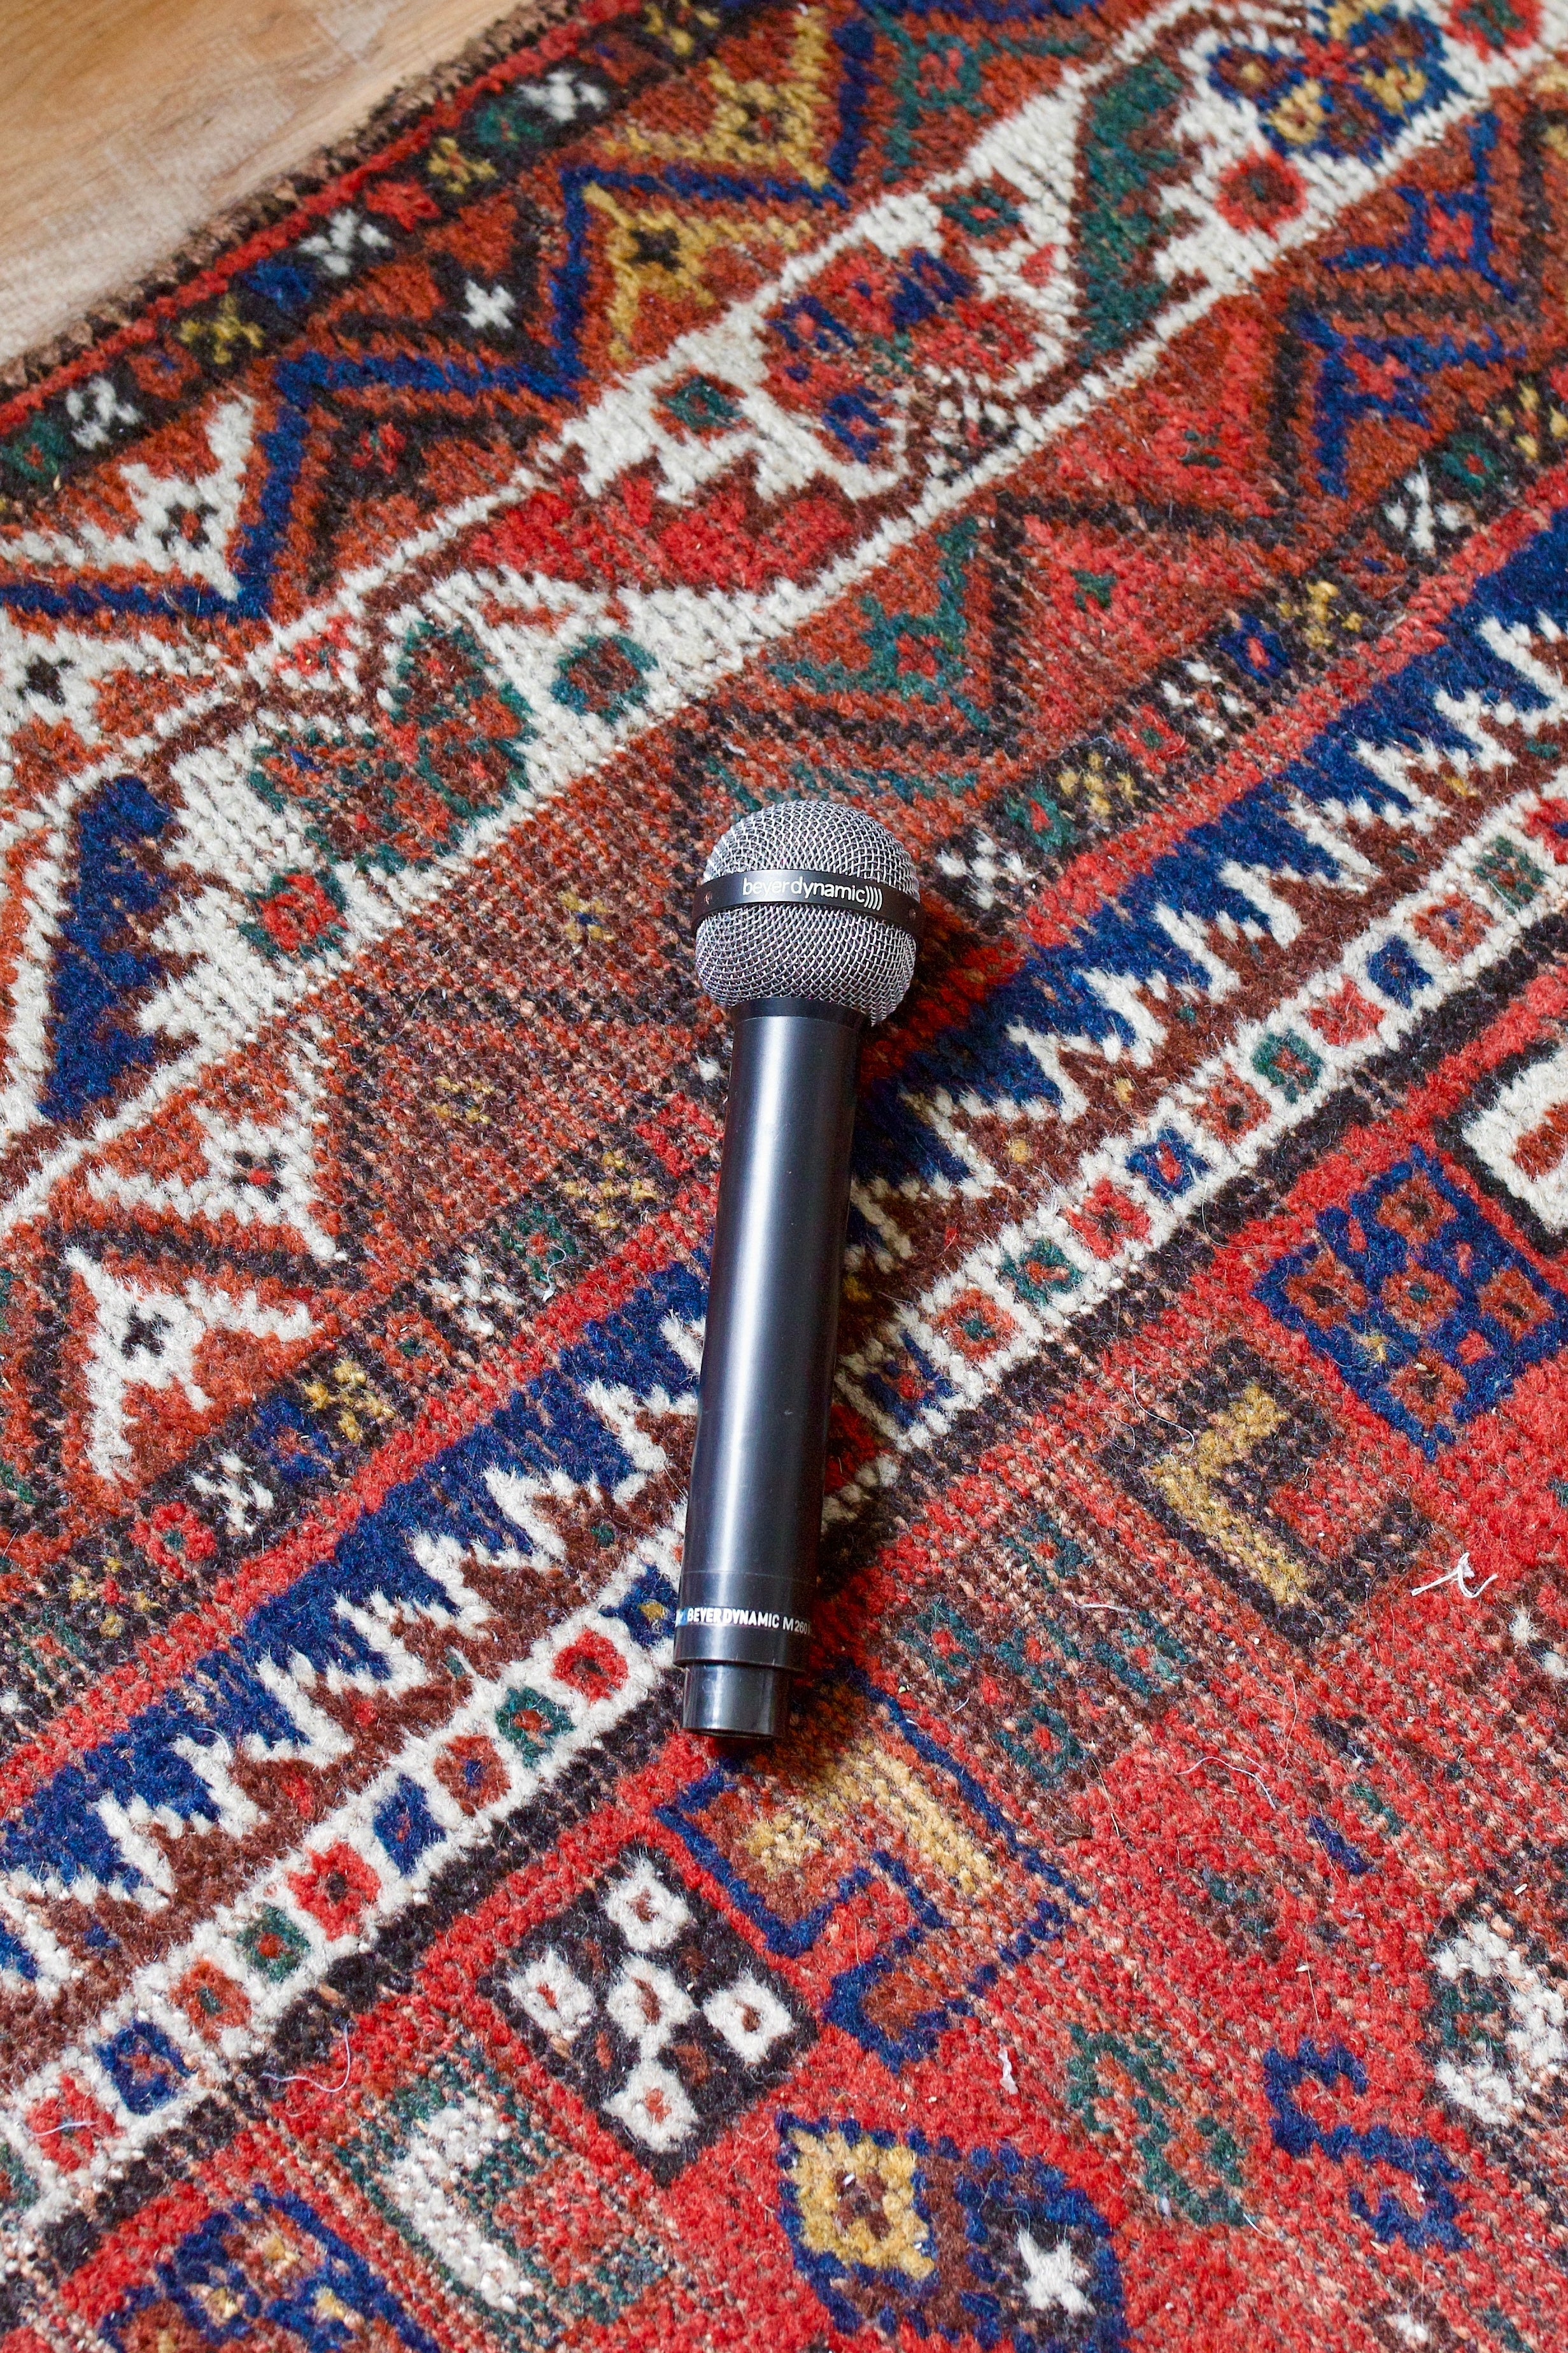 Beyerdynamic M260 N(C) Ribbon Microphone